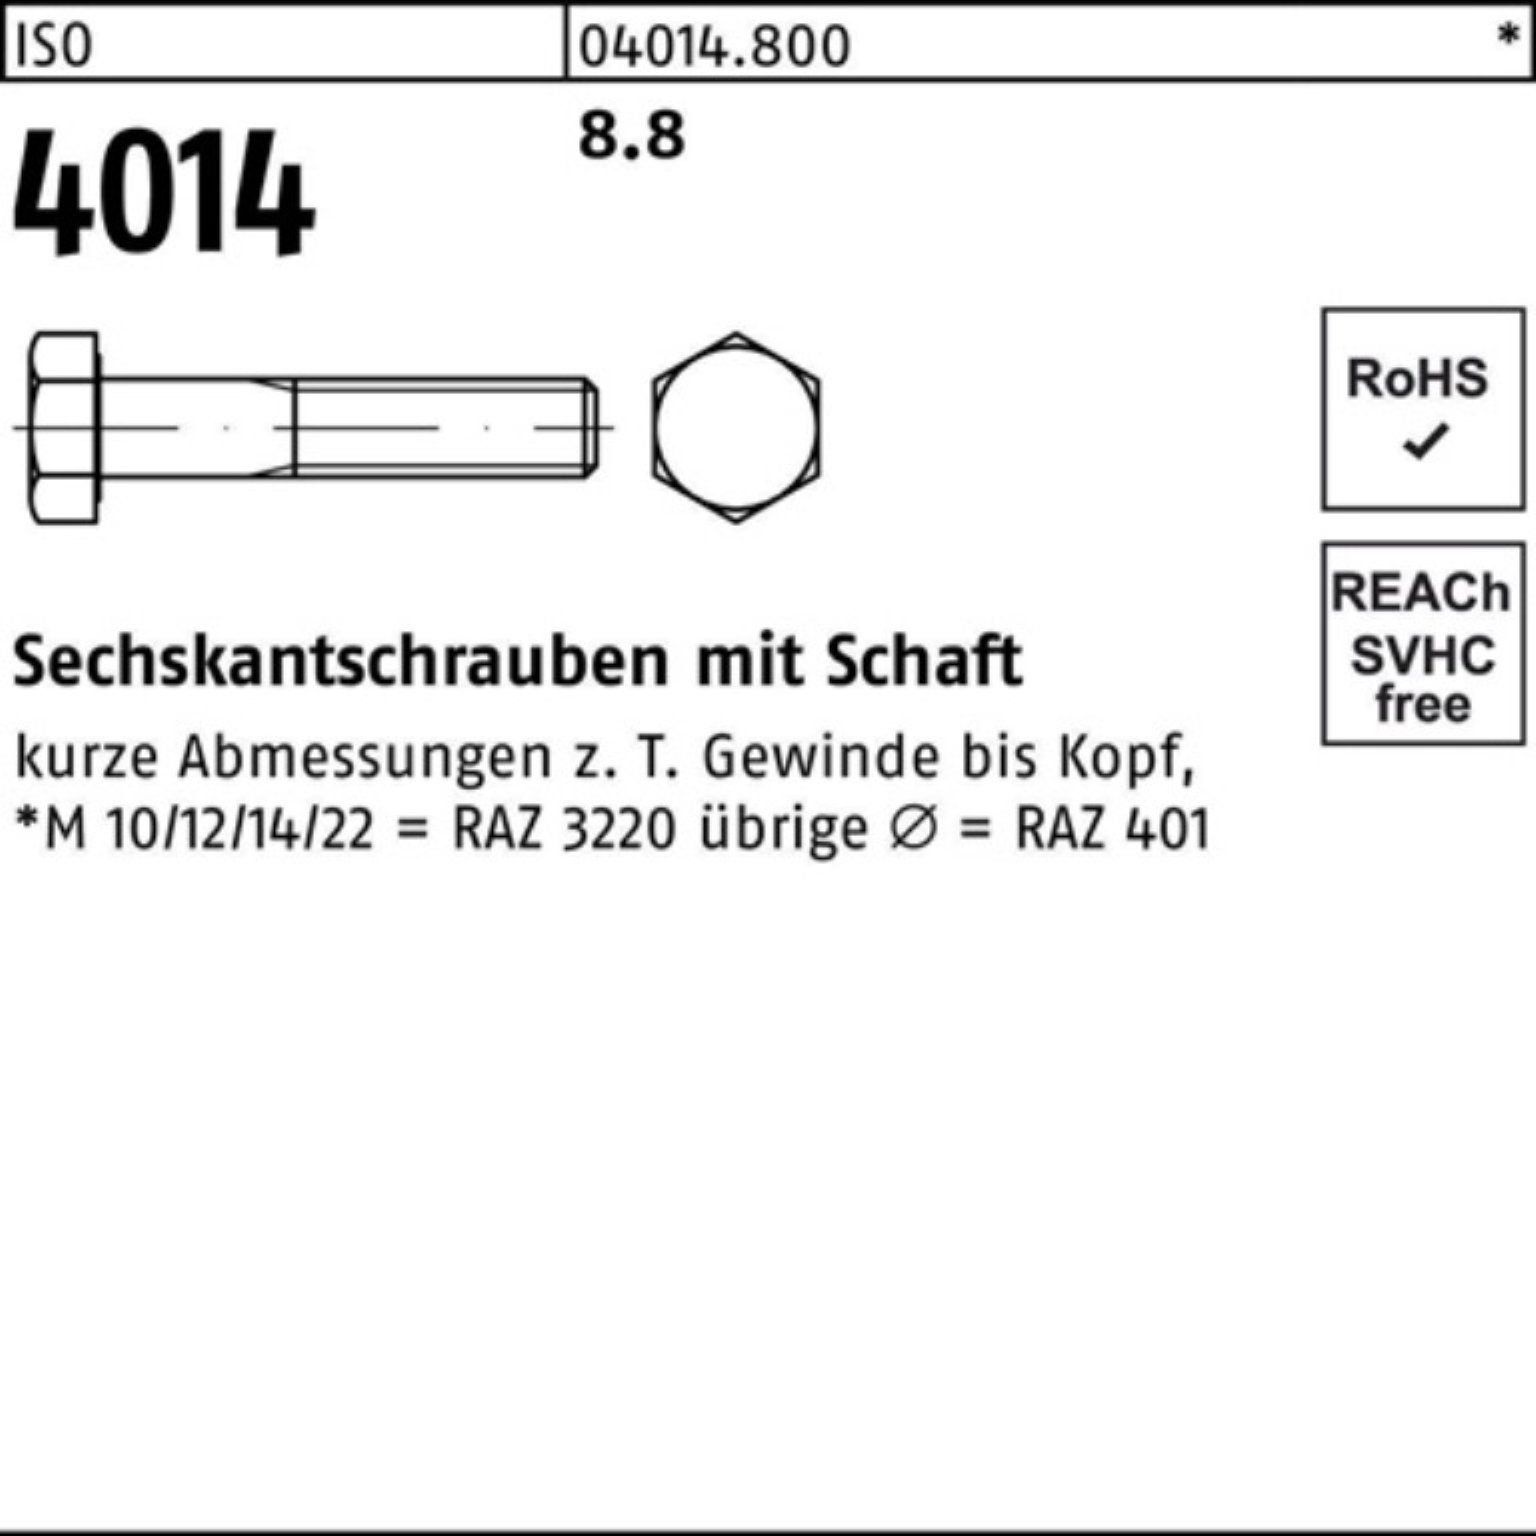 ISO Sechskantschraube Bufab Stück Sechskantschraube ISO M7x 8.8 200 Schaft 200er 4014 Pack 80